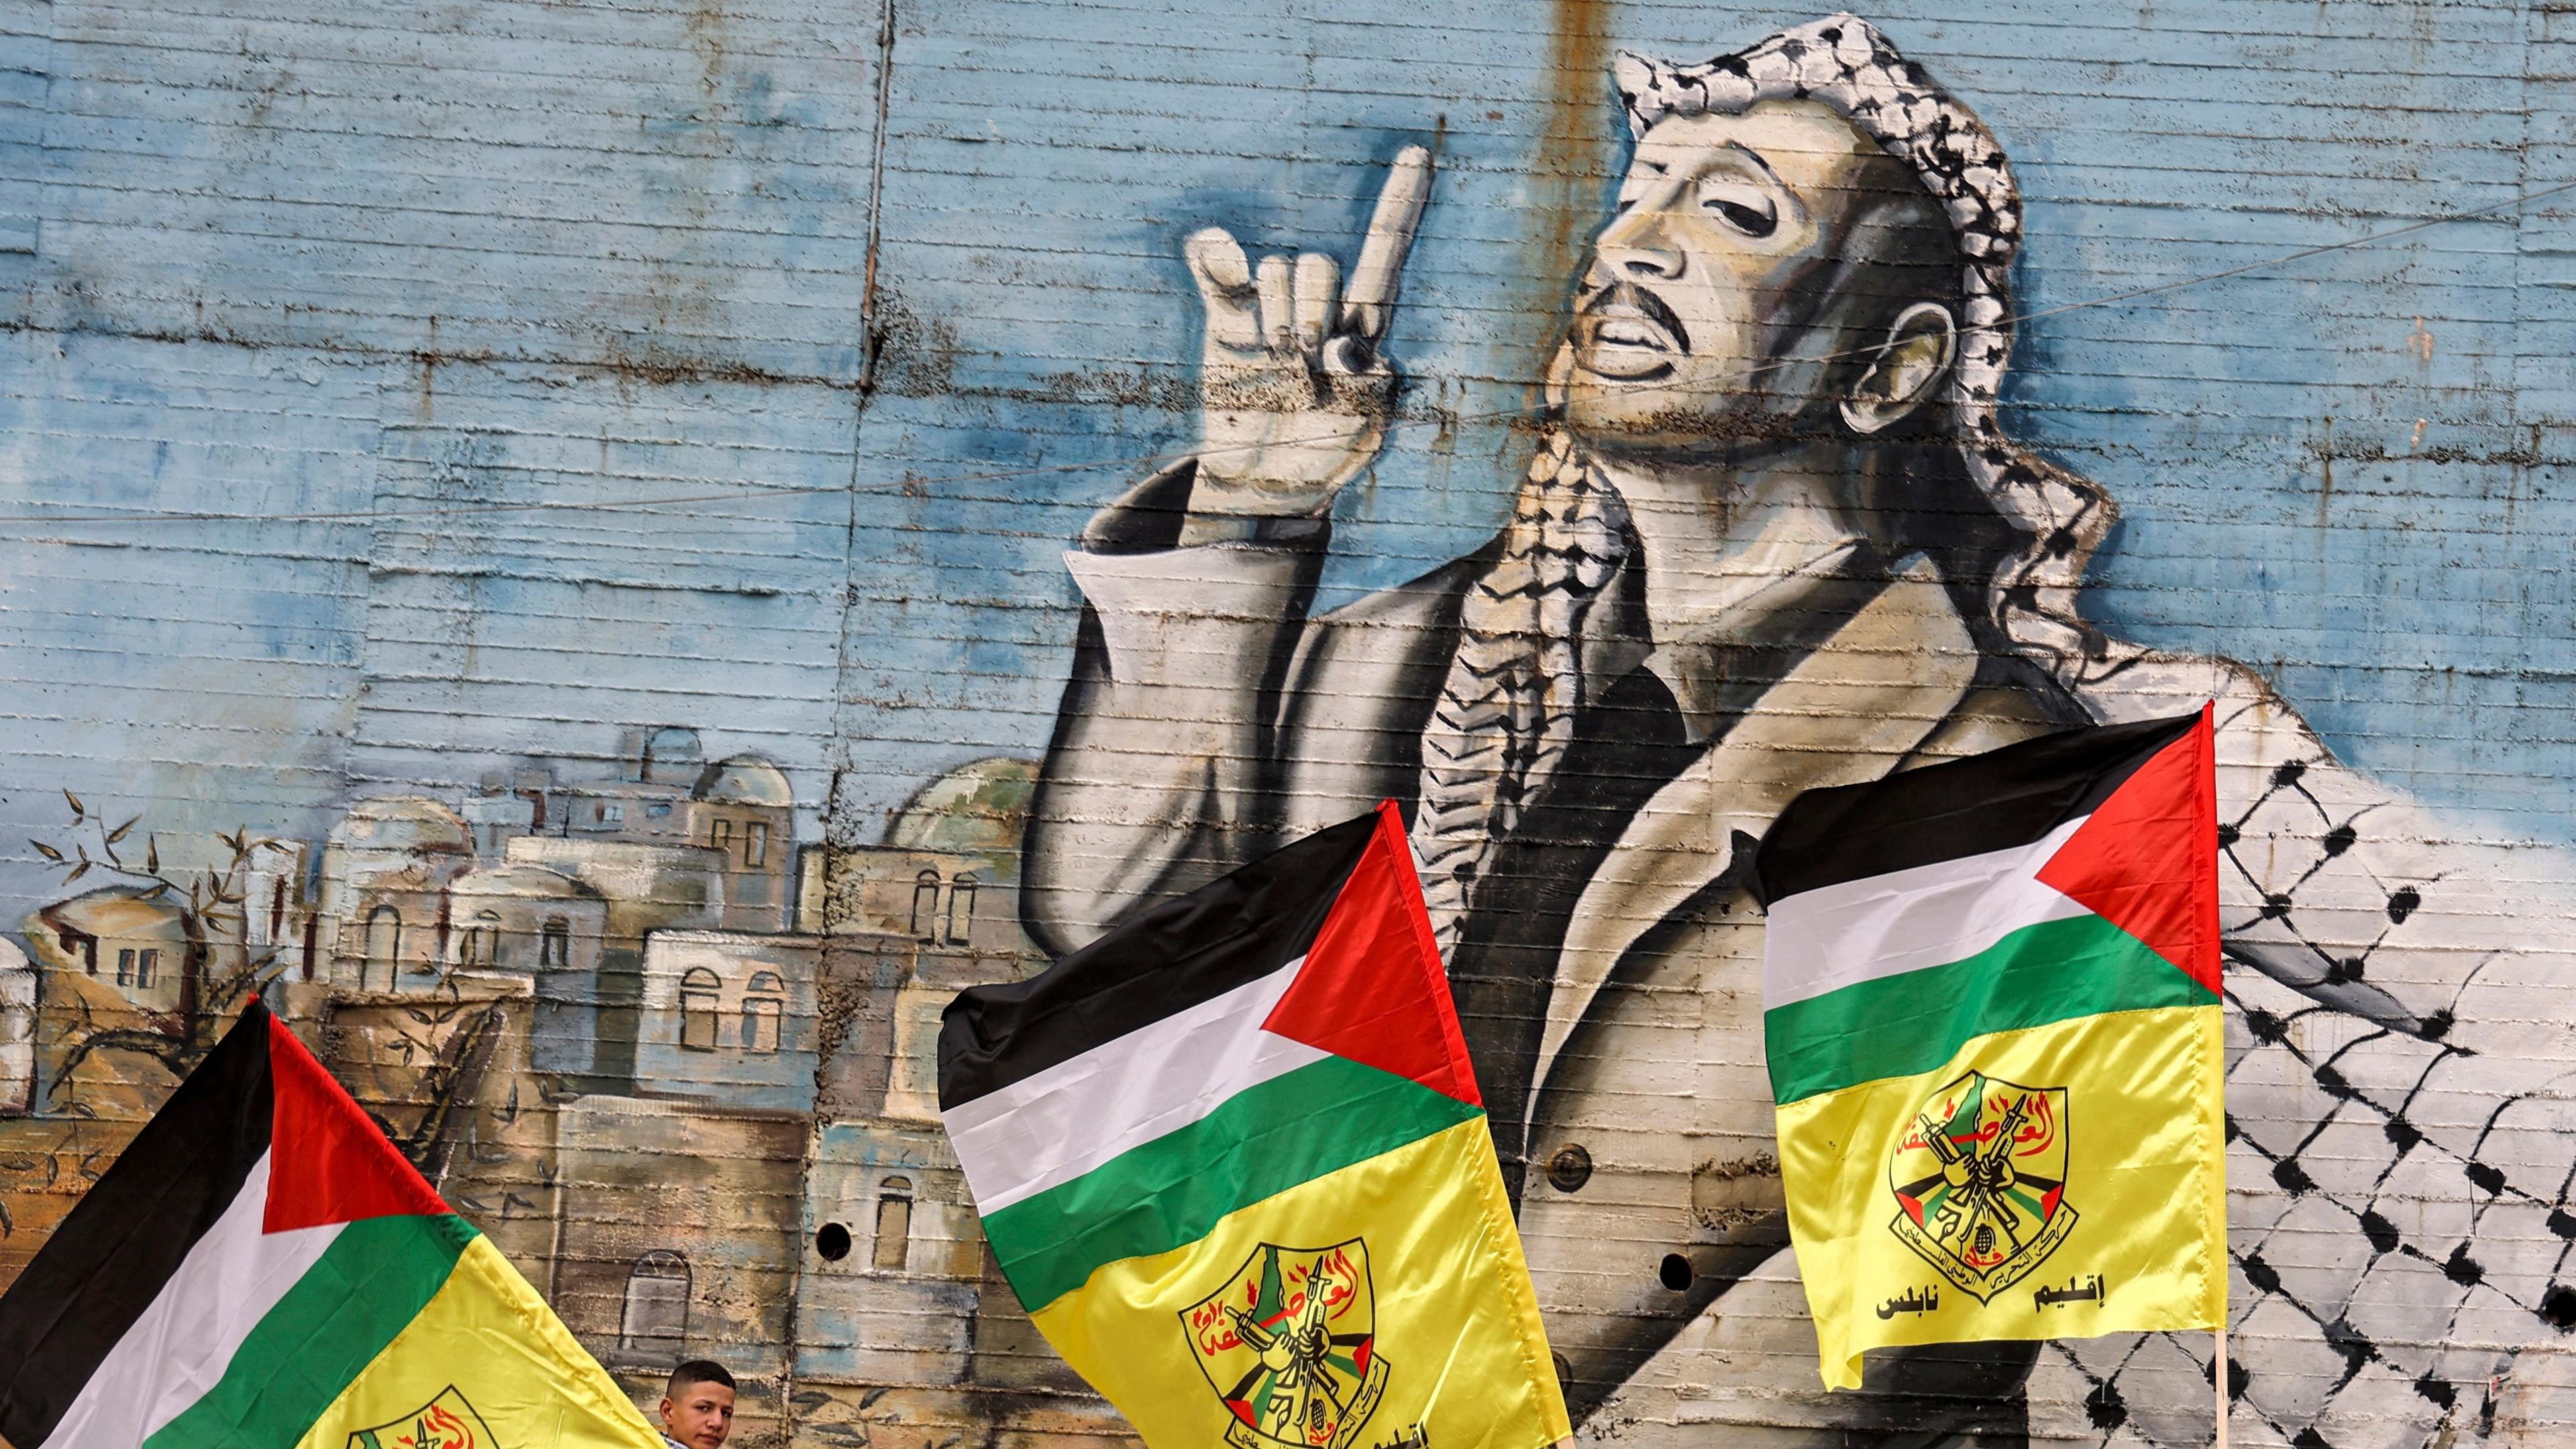 Medlemmar av al-Fatah går förbi en målning av PLO-ledaren Yassir Arafat på Västbanken. Socialdemokraternas palestinska engagemang går långt tillbaka. Foto: Jaafar Ashtiyeh/AFP via Getty Images